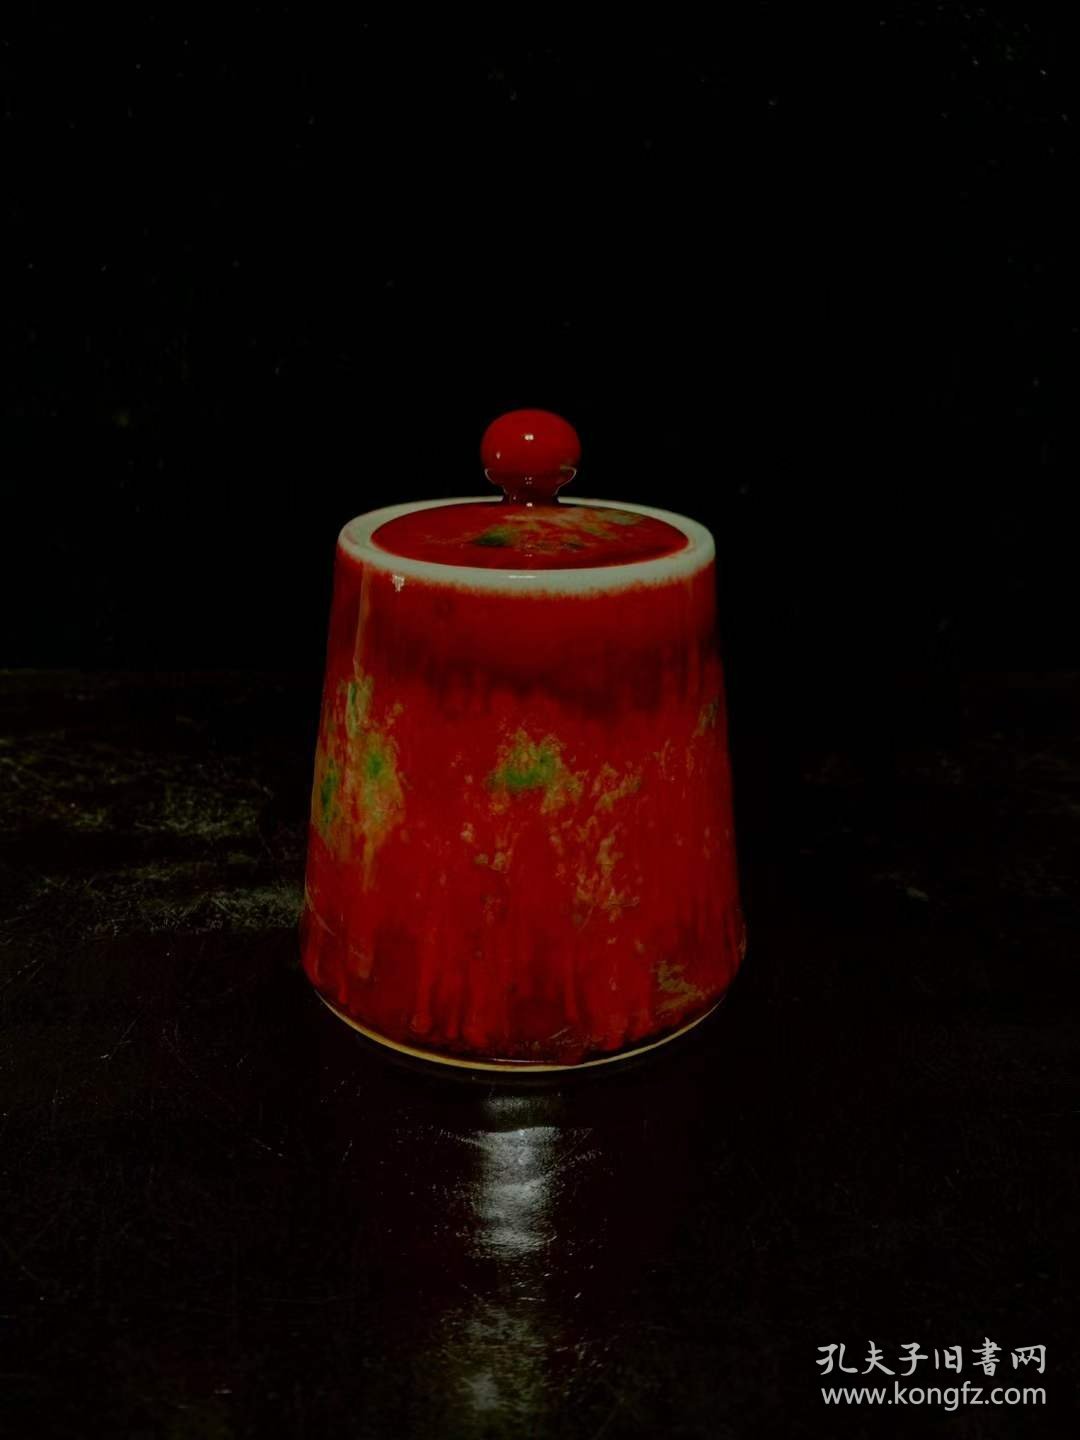 92_大清康熙红釉窑变盖罐，磨损自然均匀，入釉深邃，造型敦厚古朴，品相如图。